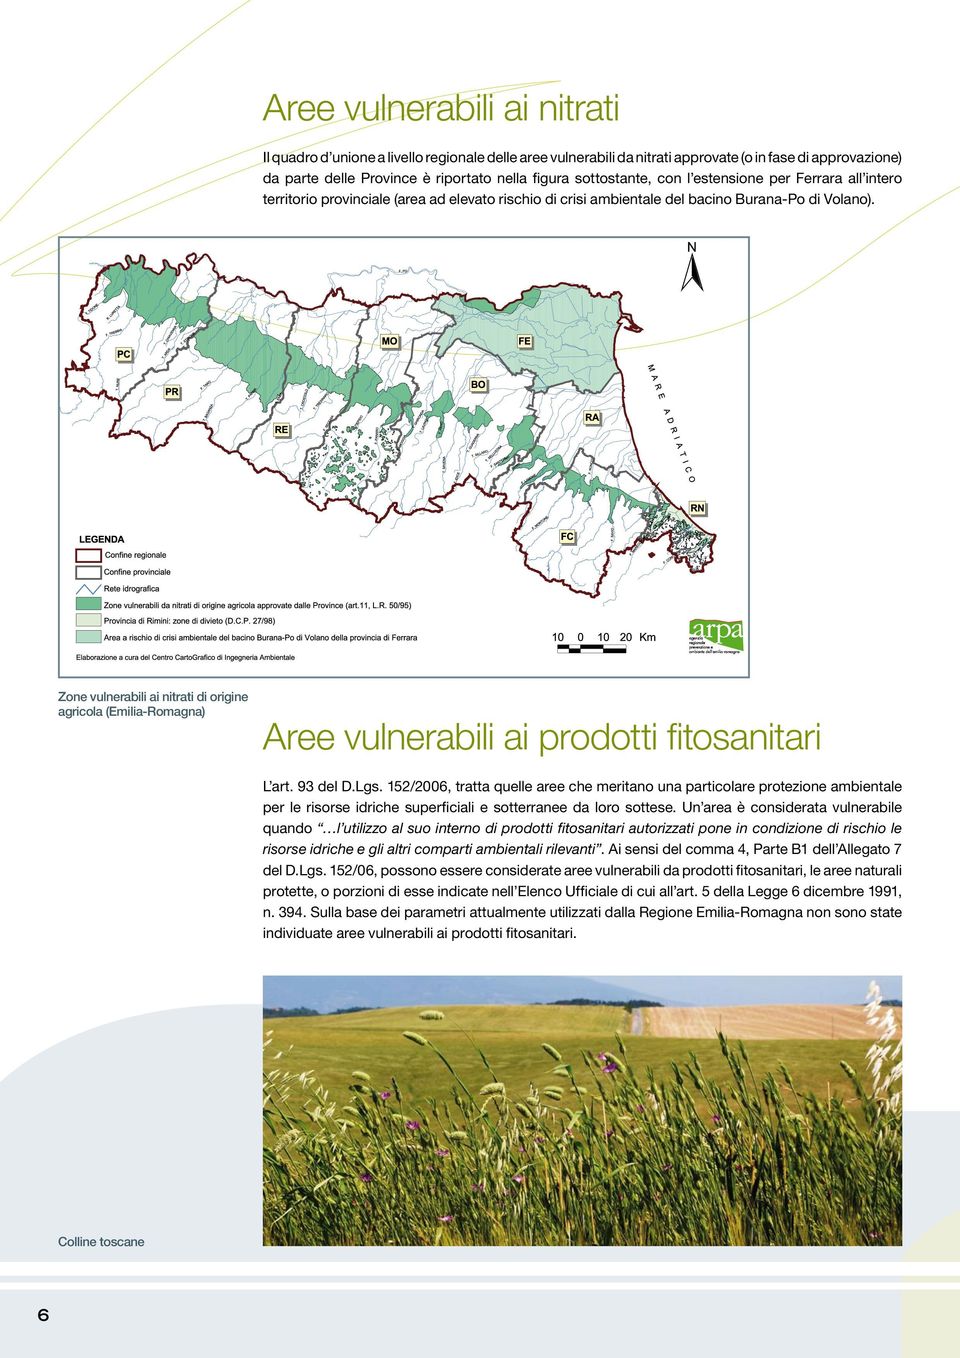 Zone vulnerabili ai nitrati di origine agricola (Emilia-Romagna) Aree vulnerabili ai prodotti fitosanitari L art. 93 del D.Lgs.